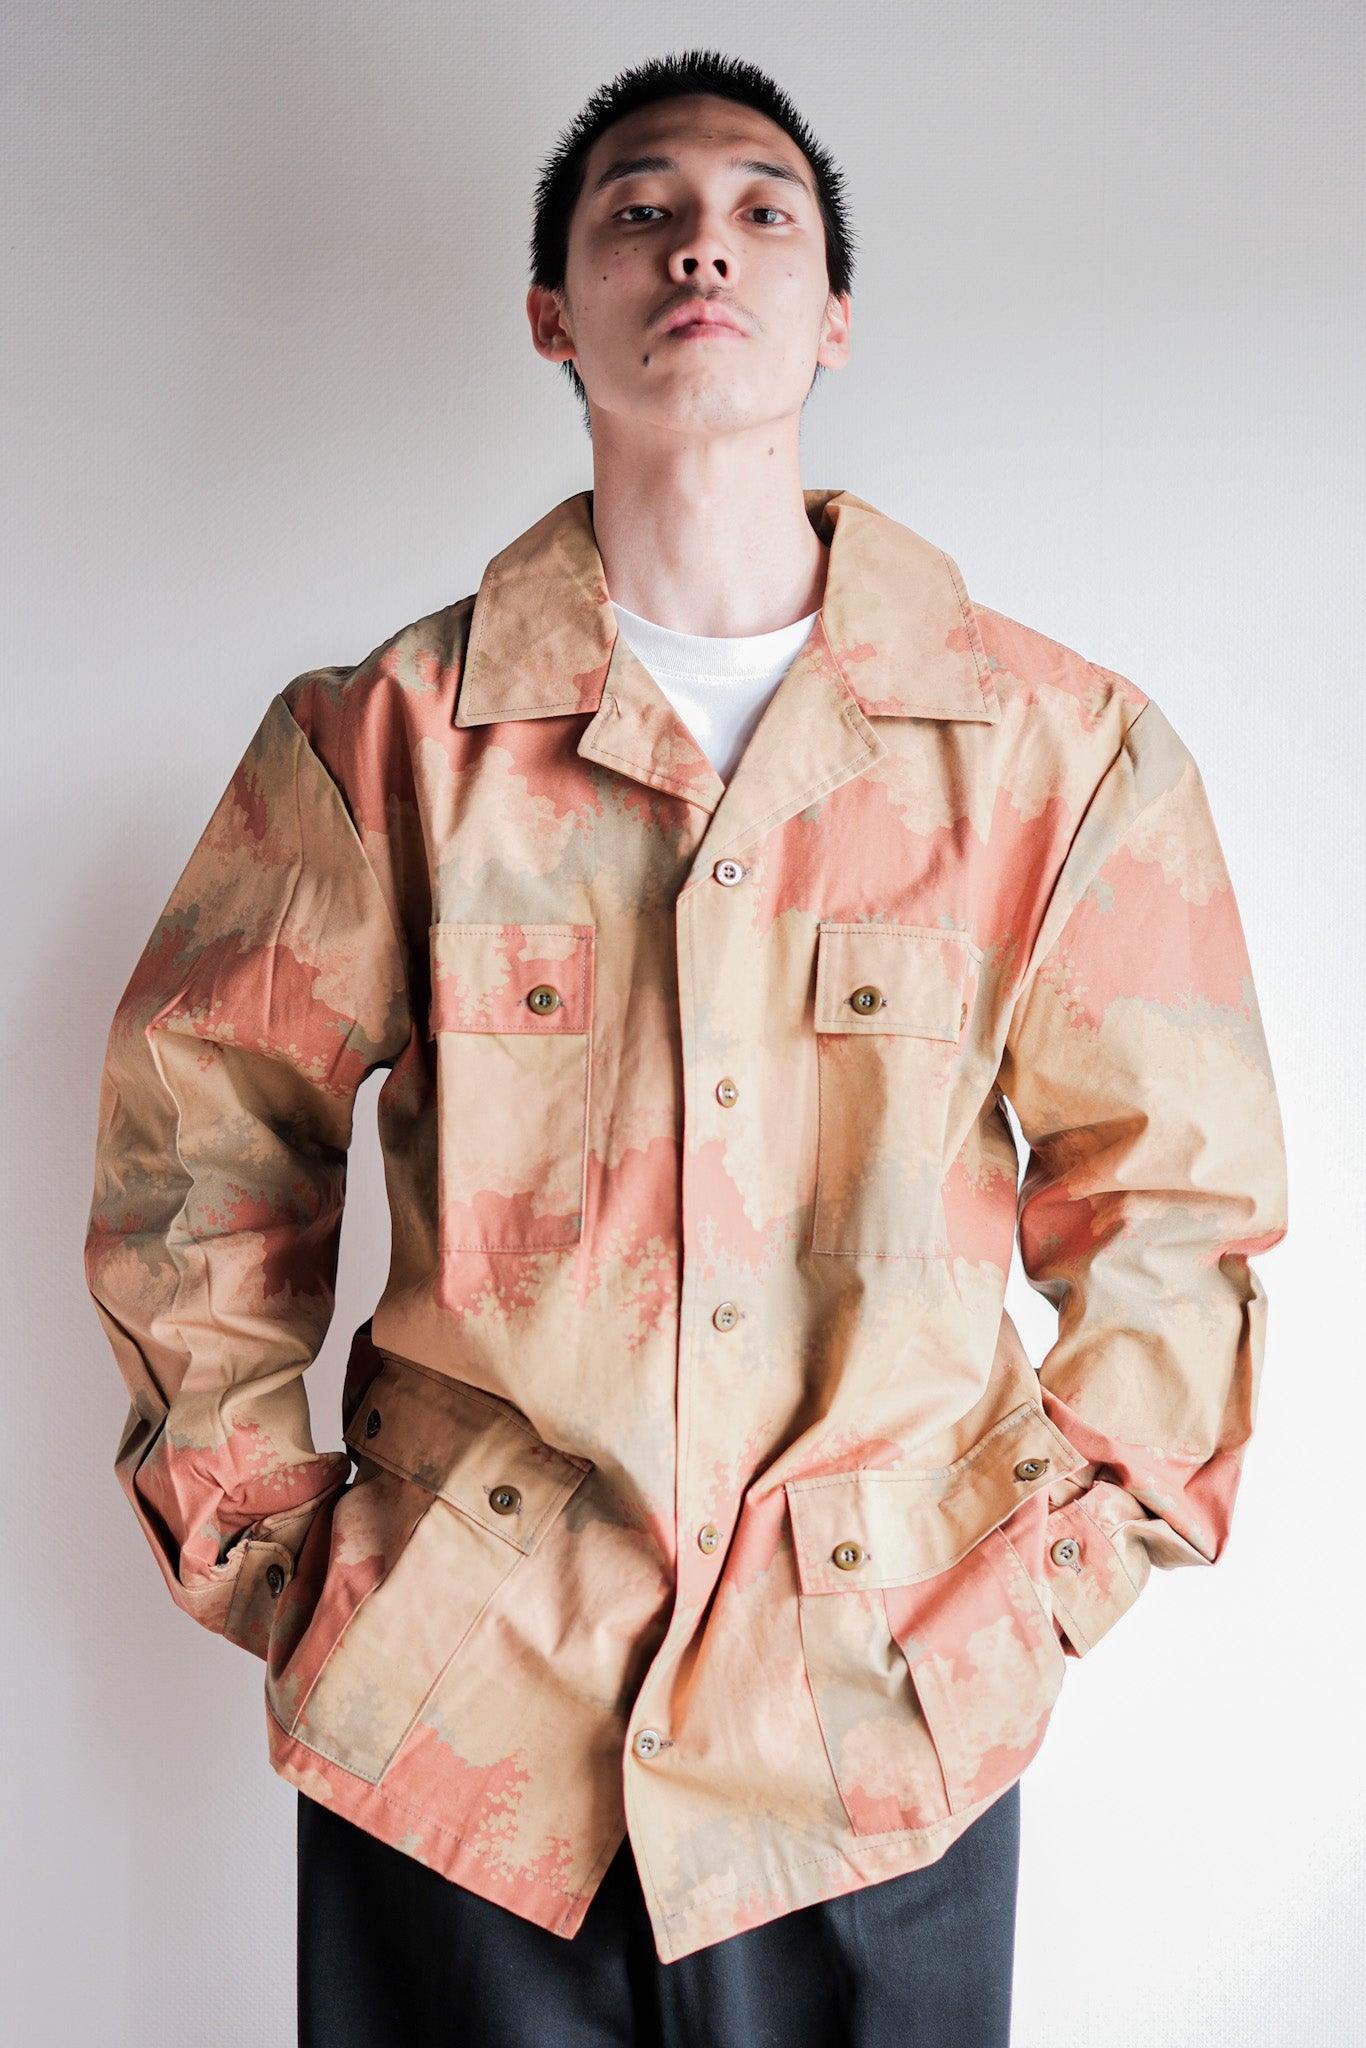 [〜90年代]捷克斯洛伐克軍隊沙漠模式偽裝野外夾克尺寸。52“測試樣本”“死庫存”